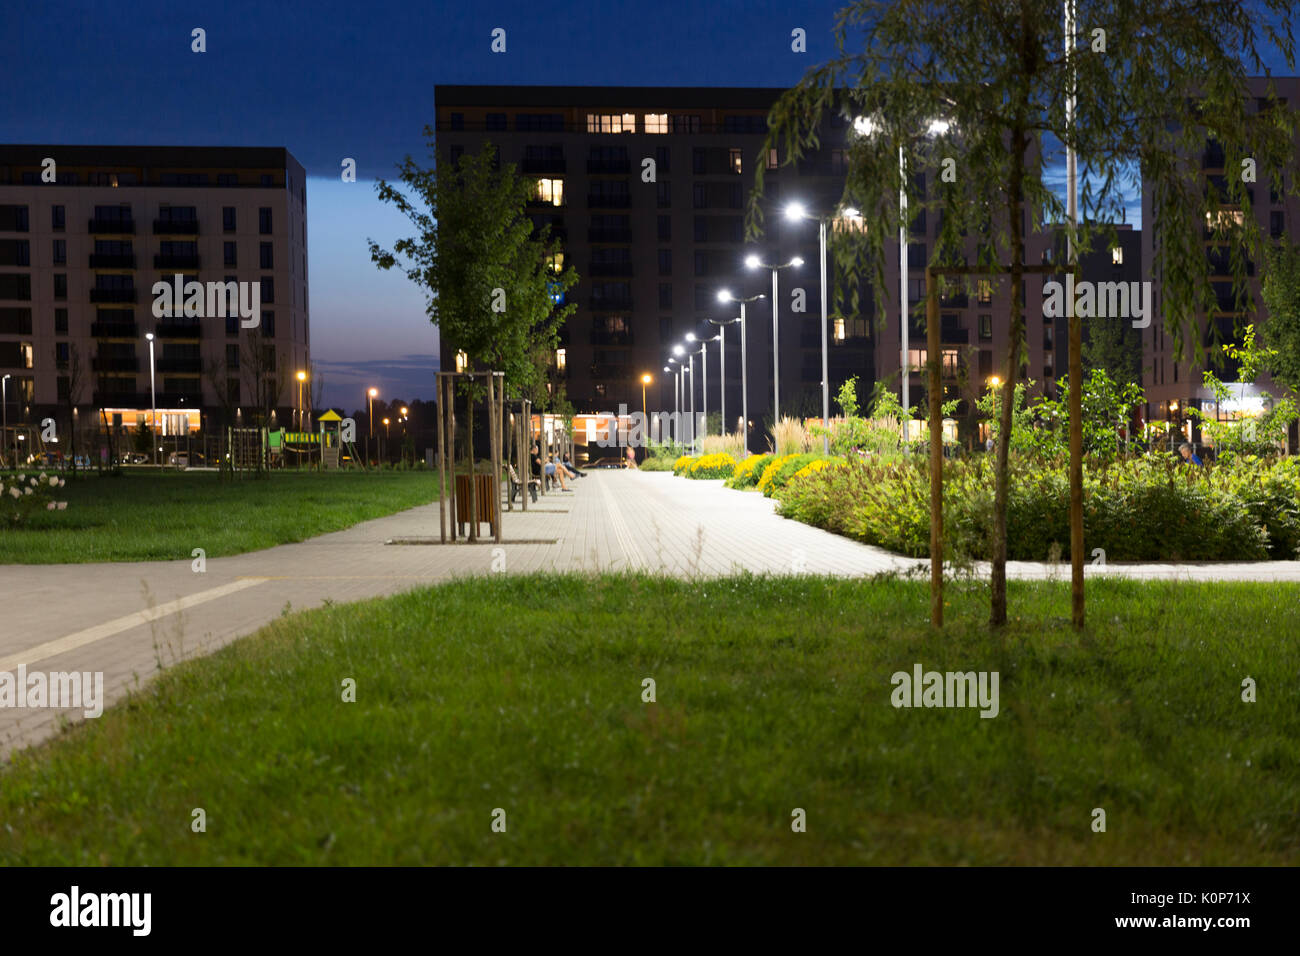 Vista de noche de nuevo y moderno barrio residencial con parque. Eco-friendly que viven en una ciudad. Foto de stock